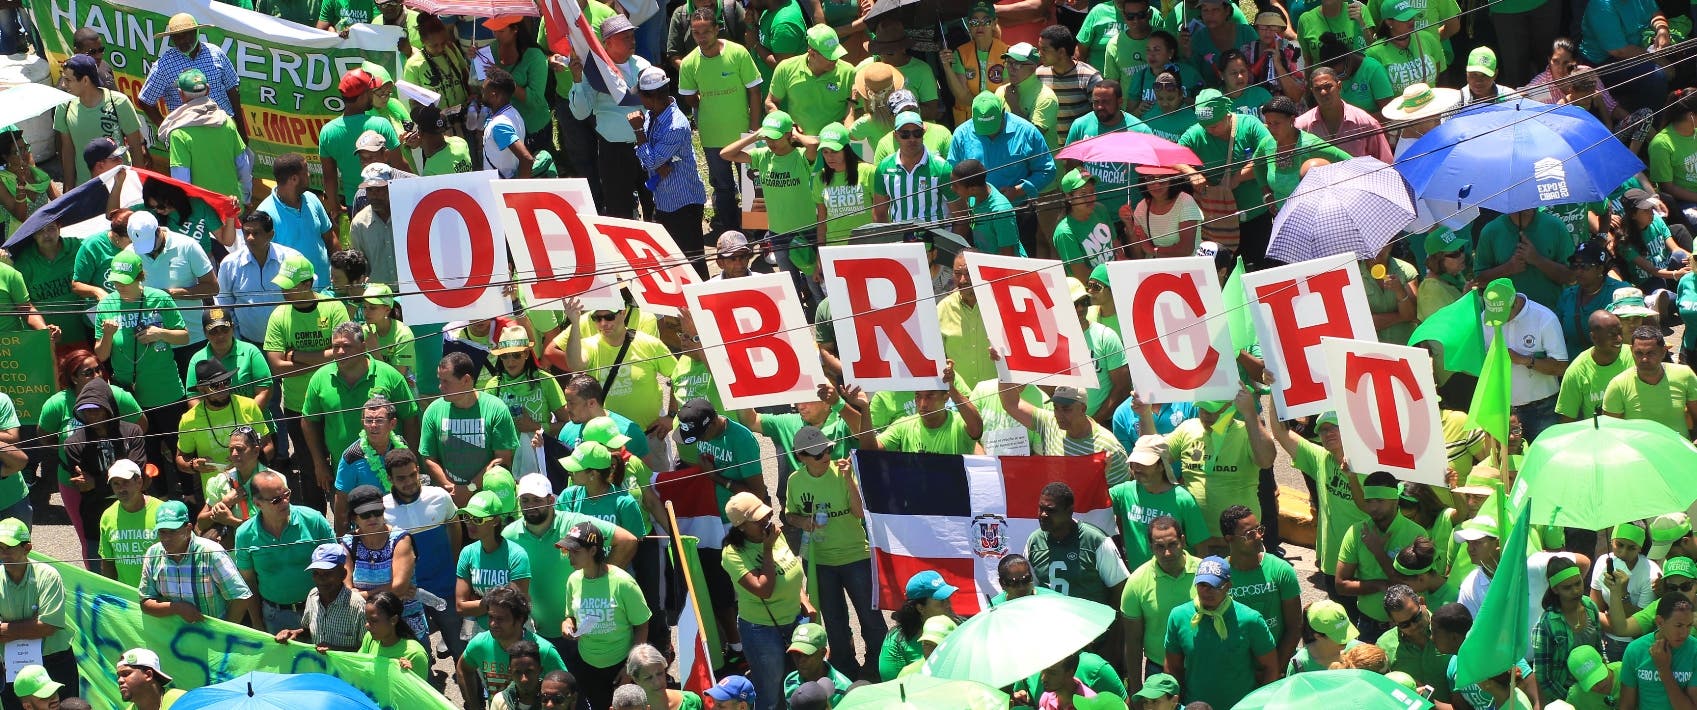 La revelación de los sobornos de Odebrecht fue lo que impulsó las protestas canalizadas en la Marcha Verde.  Archivo